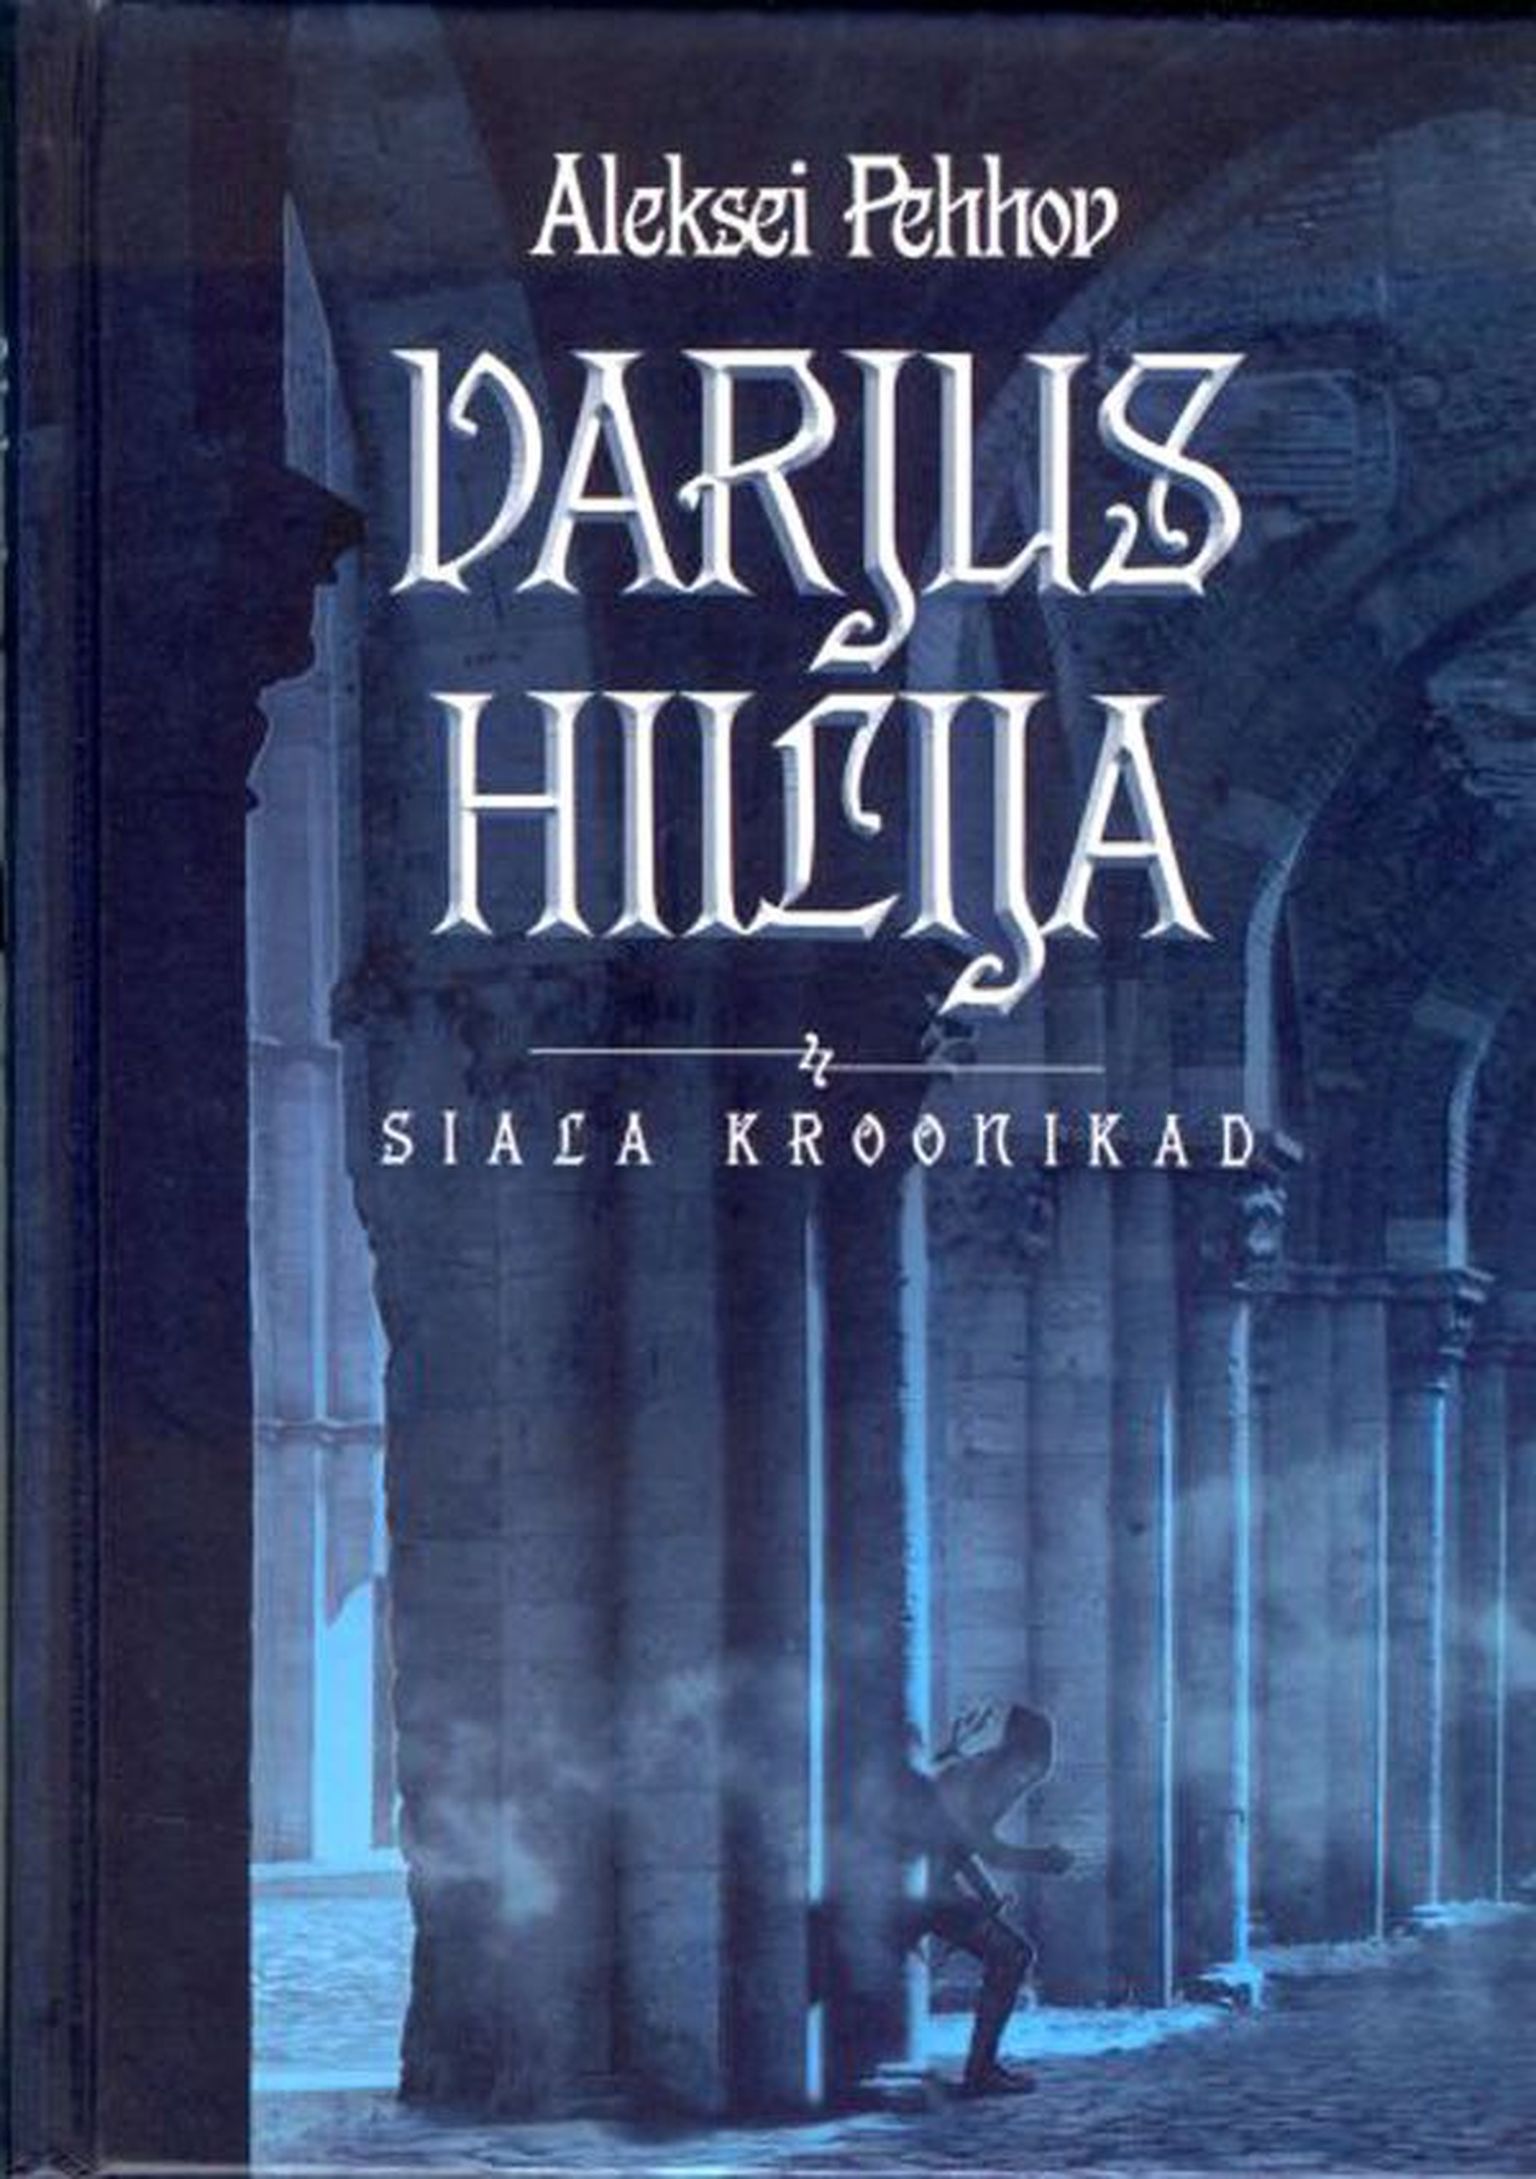 Raamat
Aleksei Pehhov
«Siala kroonikad: Varjus hiilija»
Kirjastus Varrak, 2010, 
371 lk
Tõlkija Veronika Einberg